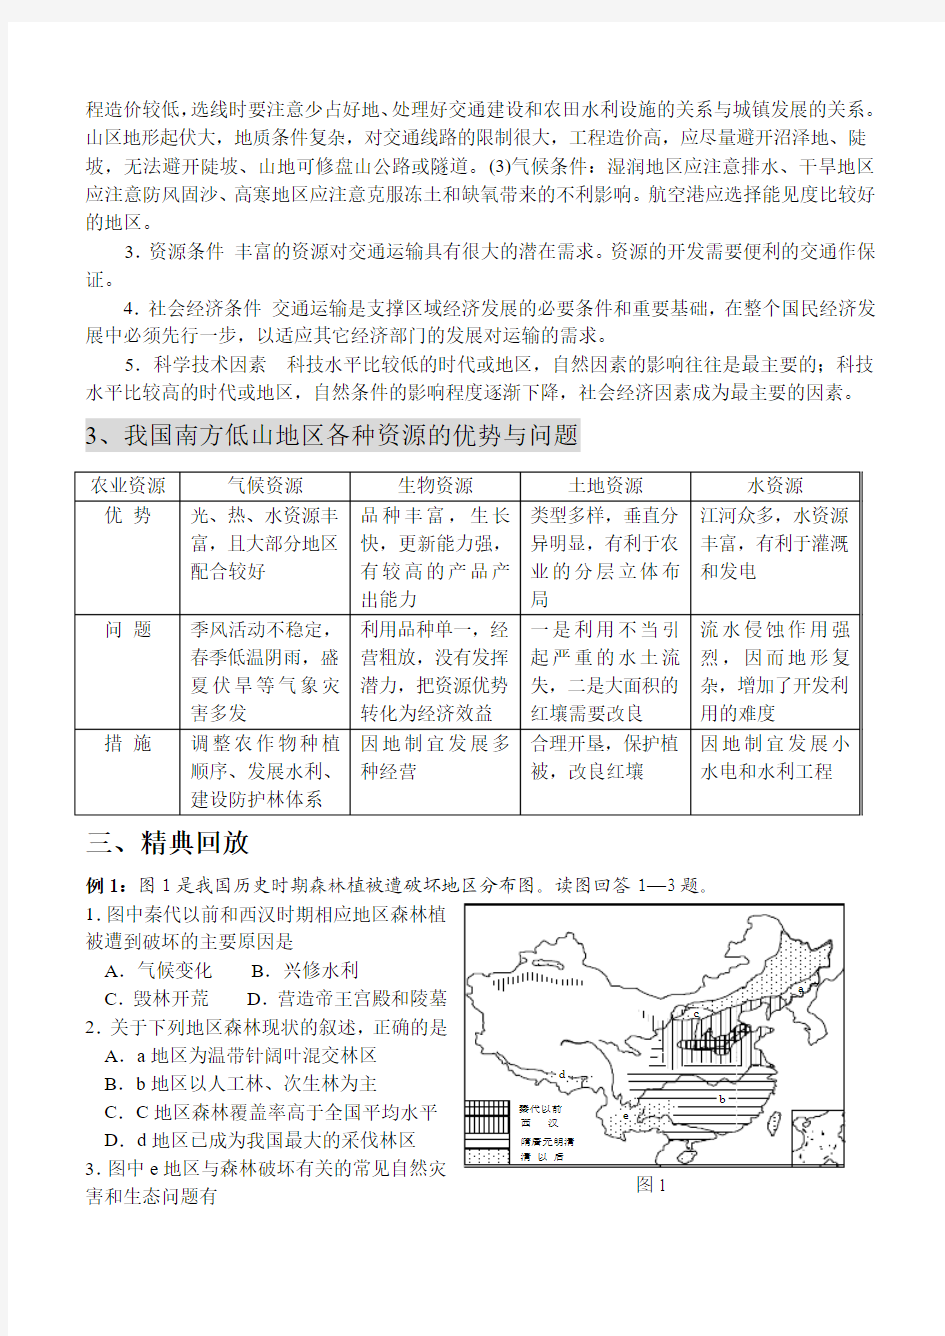 中国国土整治与区域开发9